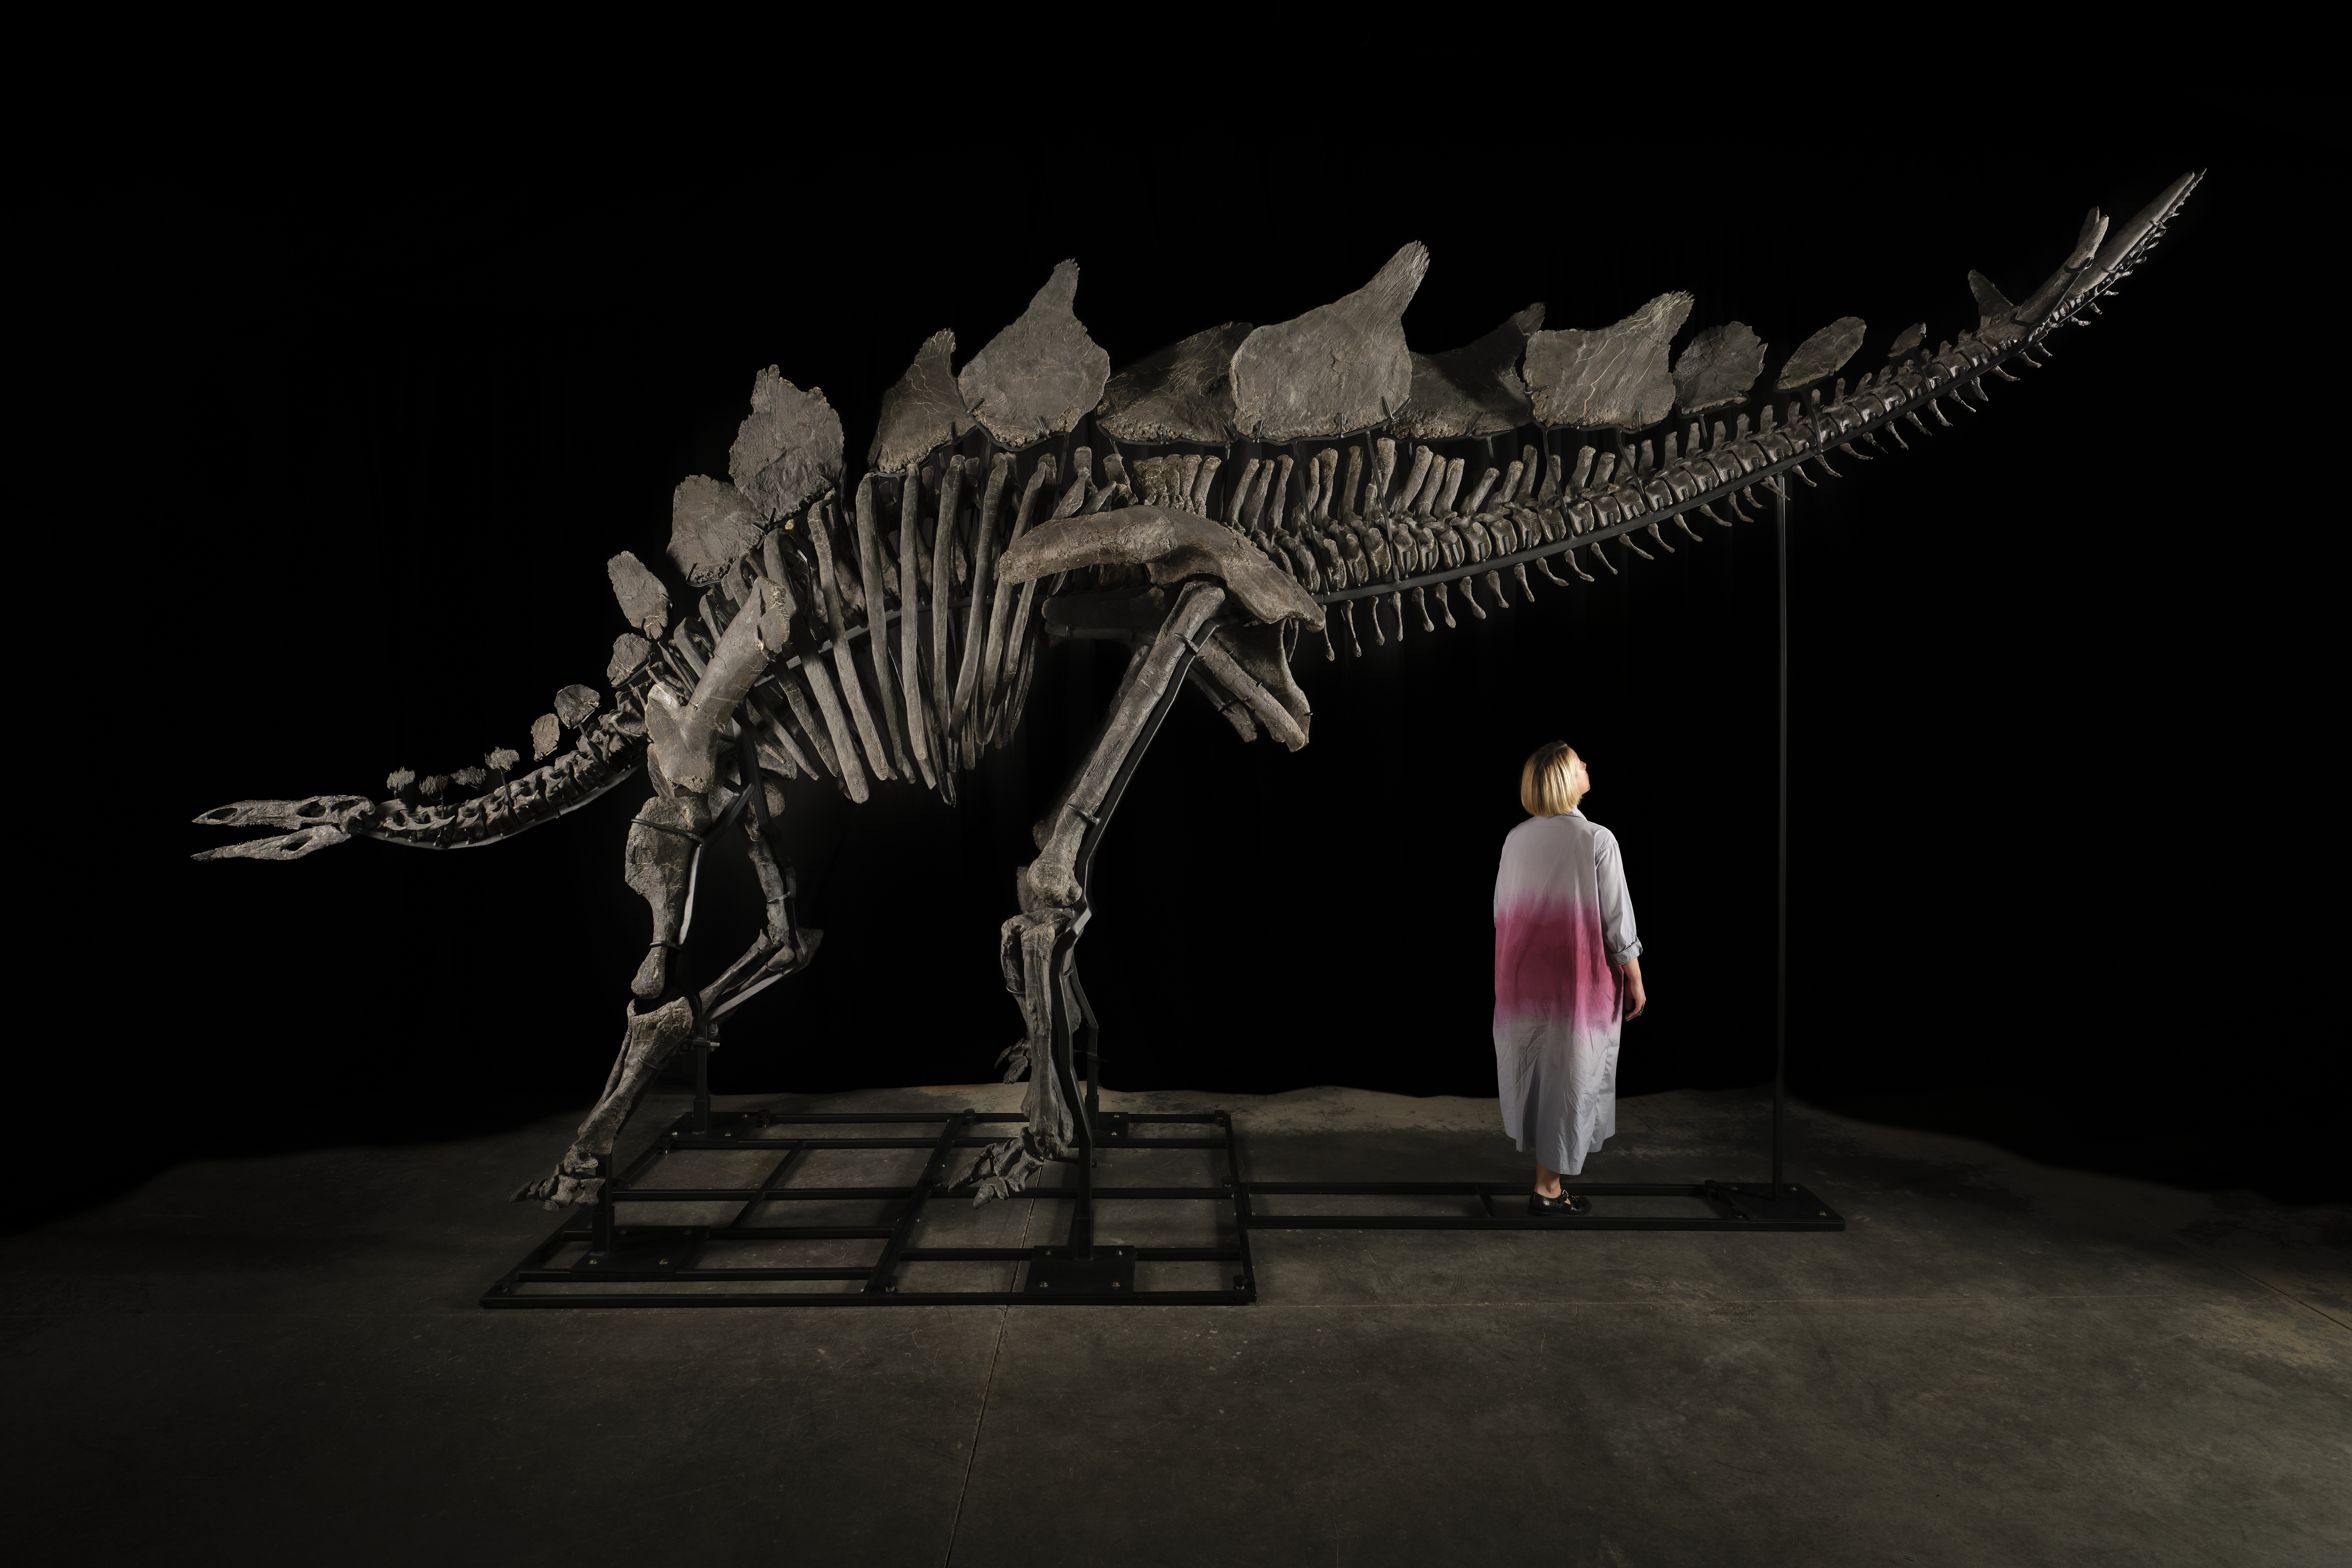 Quién es el multimillonario que compró el esqueleto de dinosaurio más caro del mundo